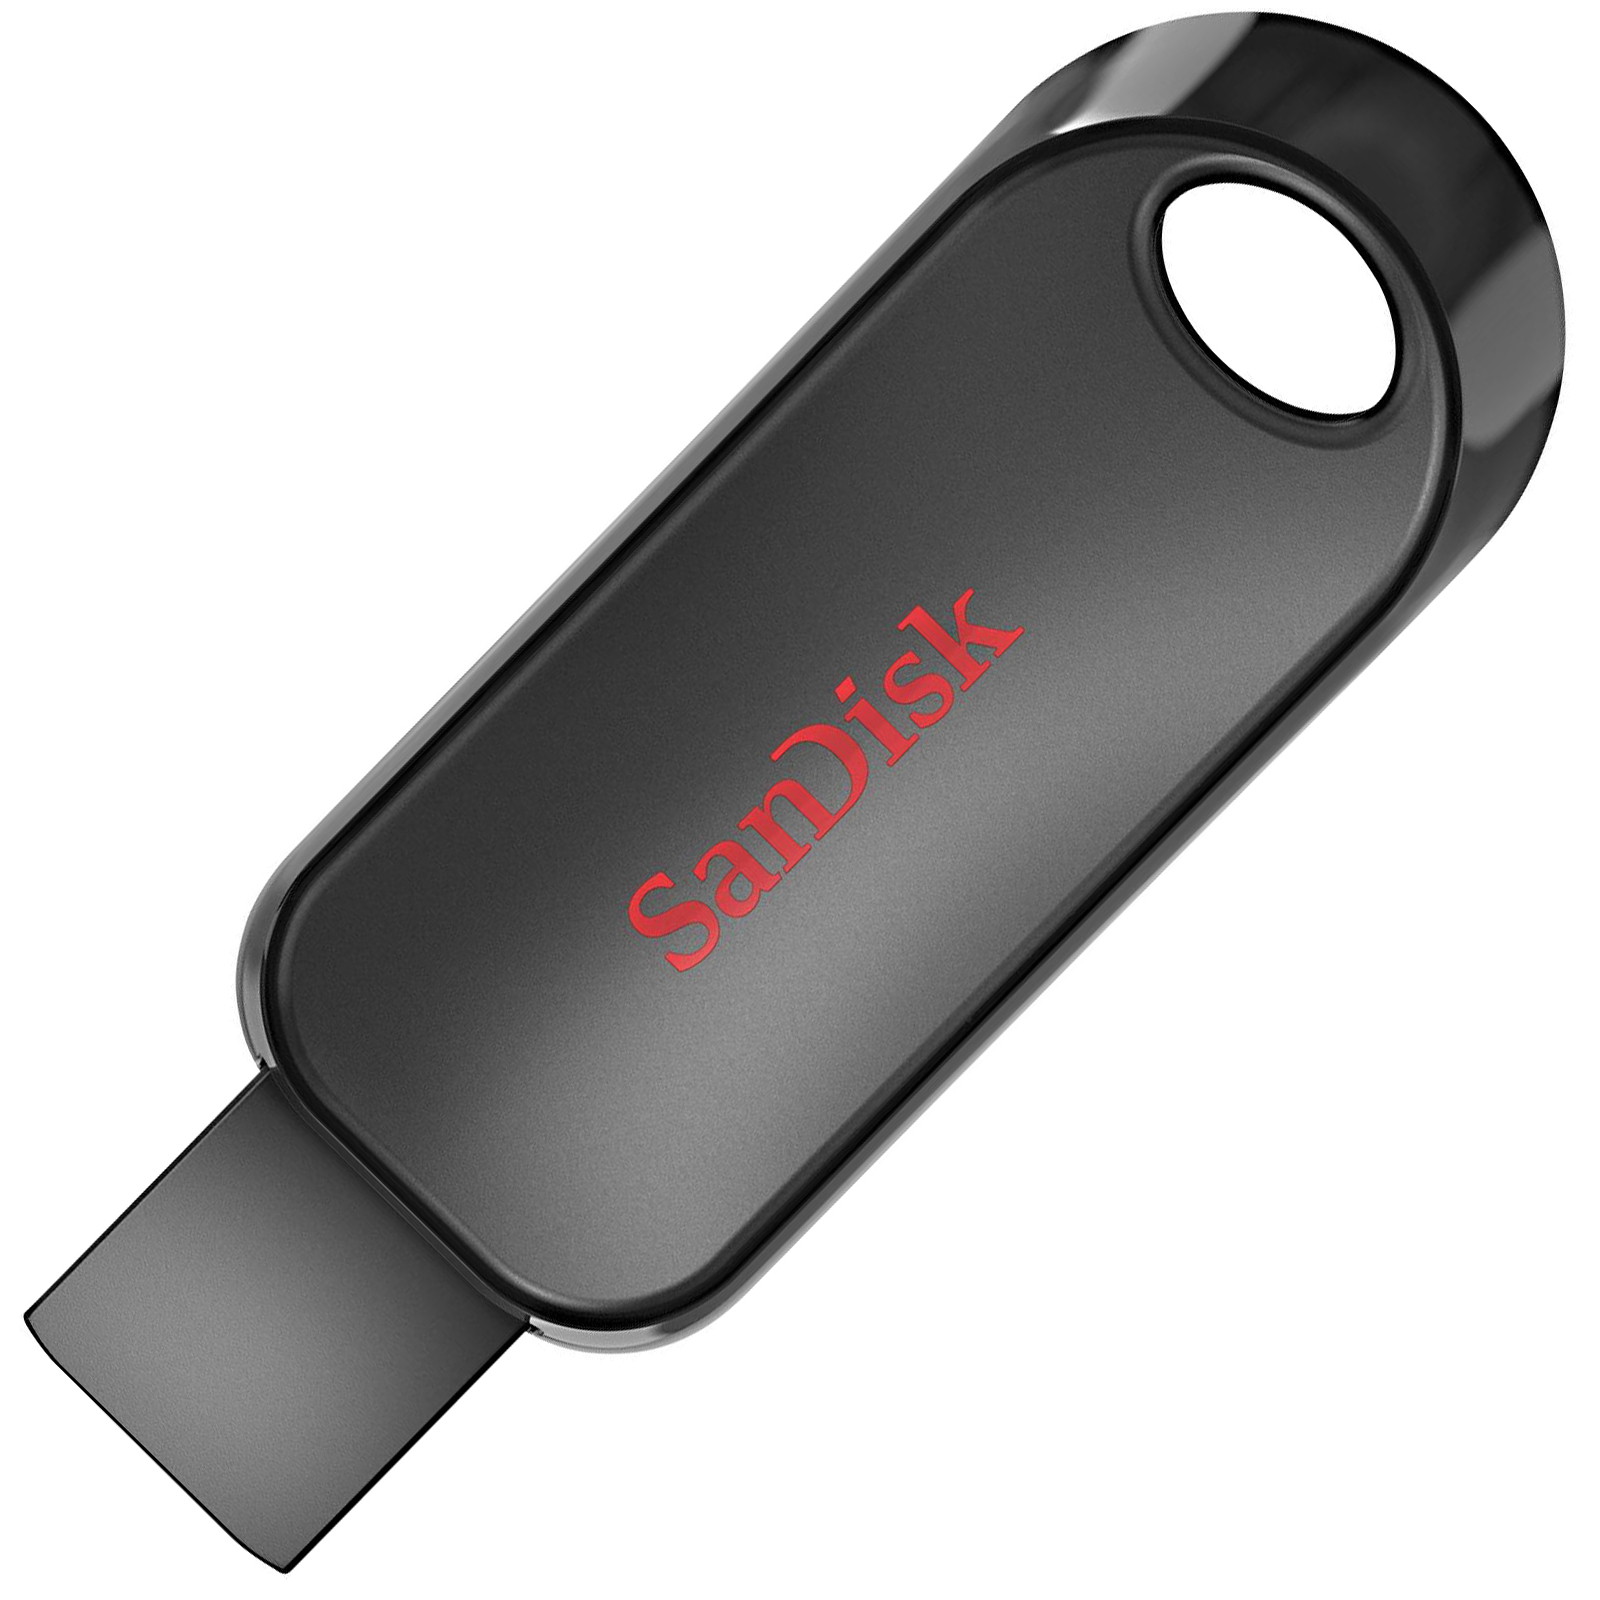 USB флеш накопитель SanDisk 16GB Cruzer Snap USB 2.0 (SDCZ62-016G-G35)